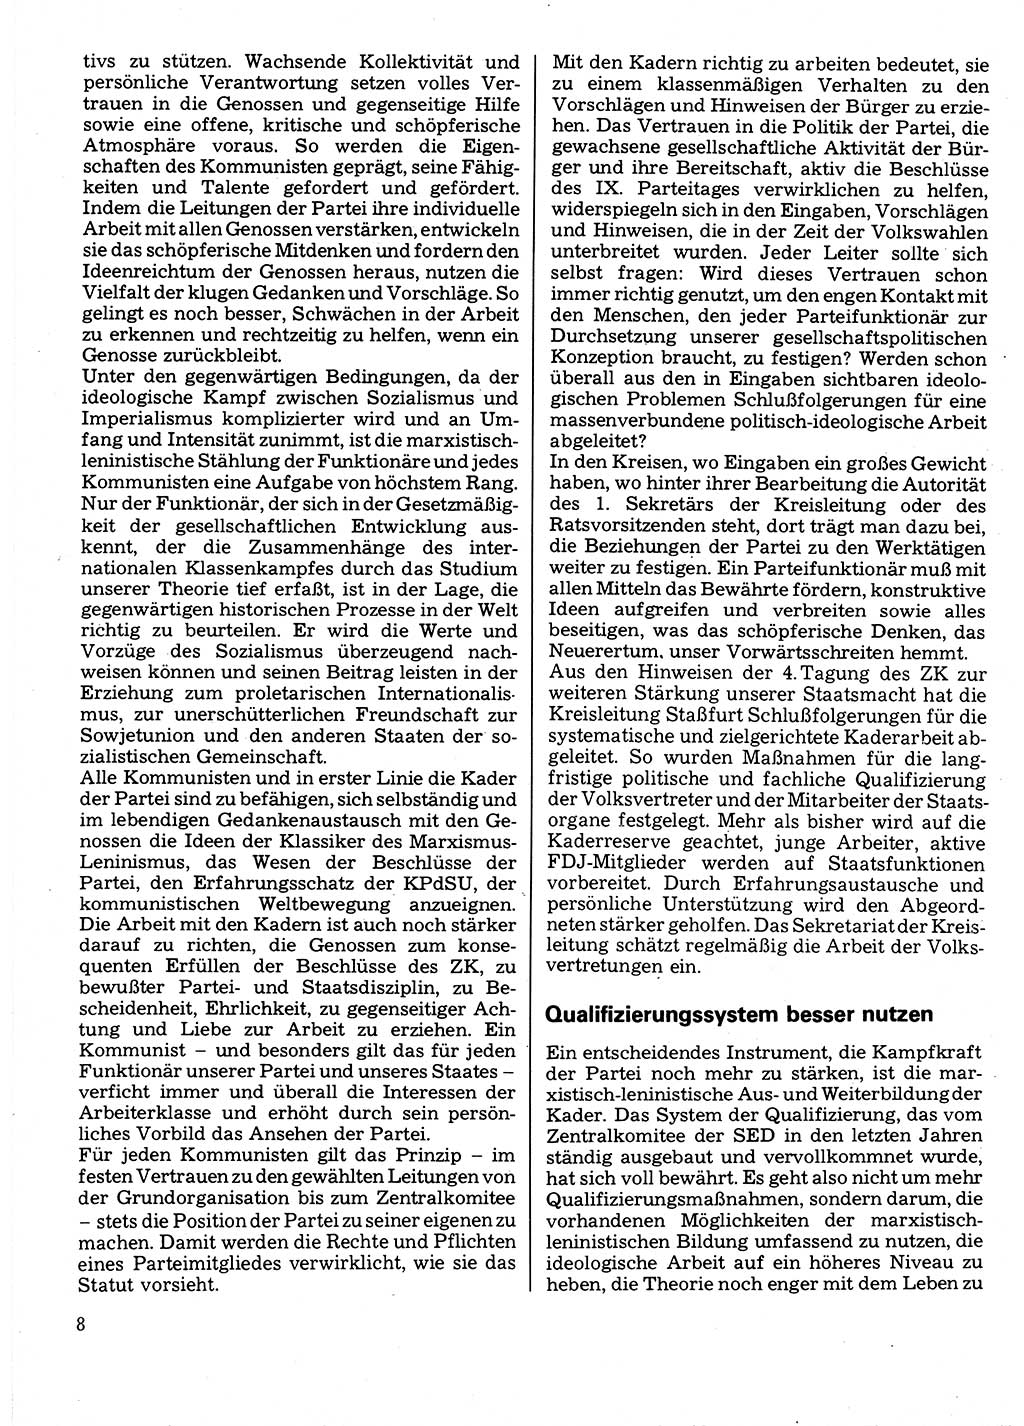 Neuer Weg (NW), Organ des Zentralkomitees (ZK) der SED (Sozialistische Einheitspartei Deutschlands) für Fragen des Parteilebens, 32. Jahrgang [Deutsche Demokratische Republik (DDR)] 1977, Seite 8 (NW ZK SED DDR 1977, S. 8)